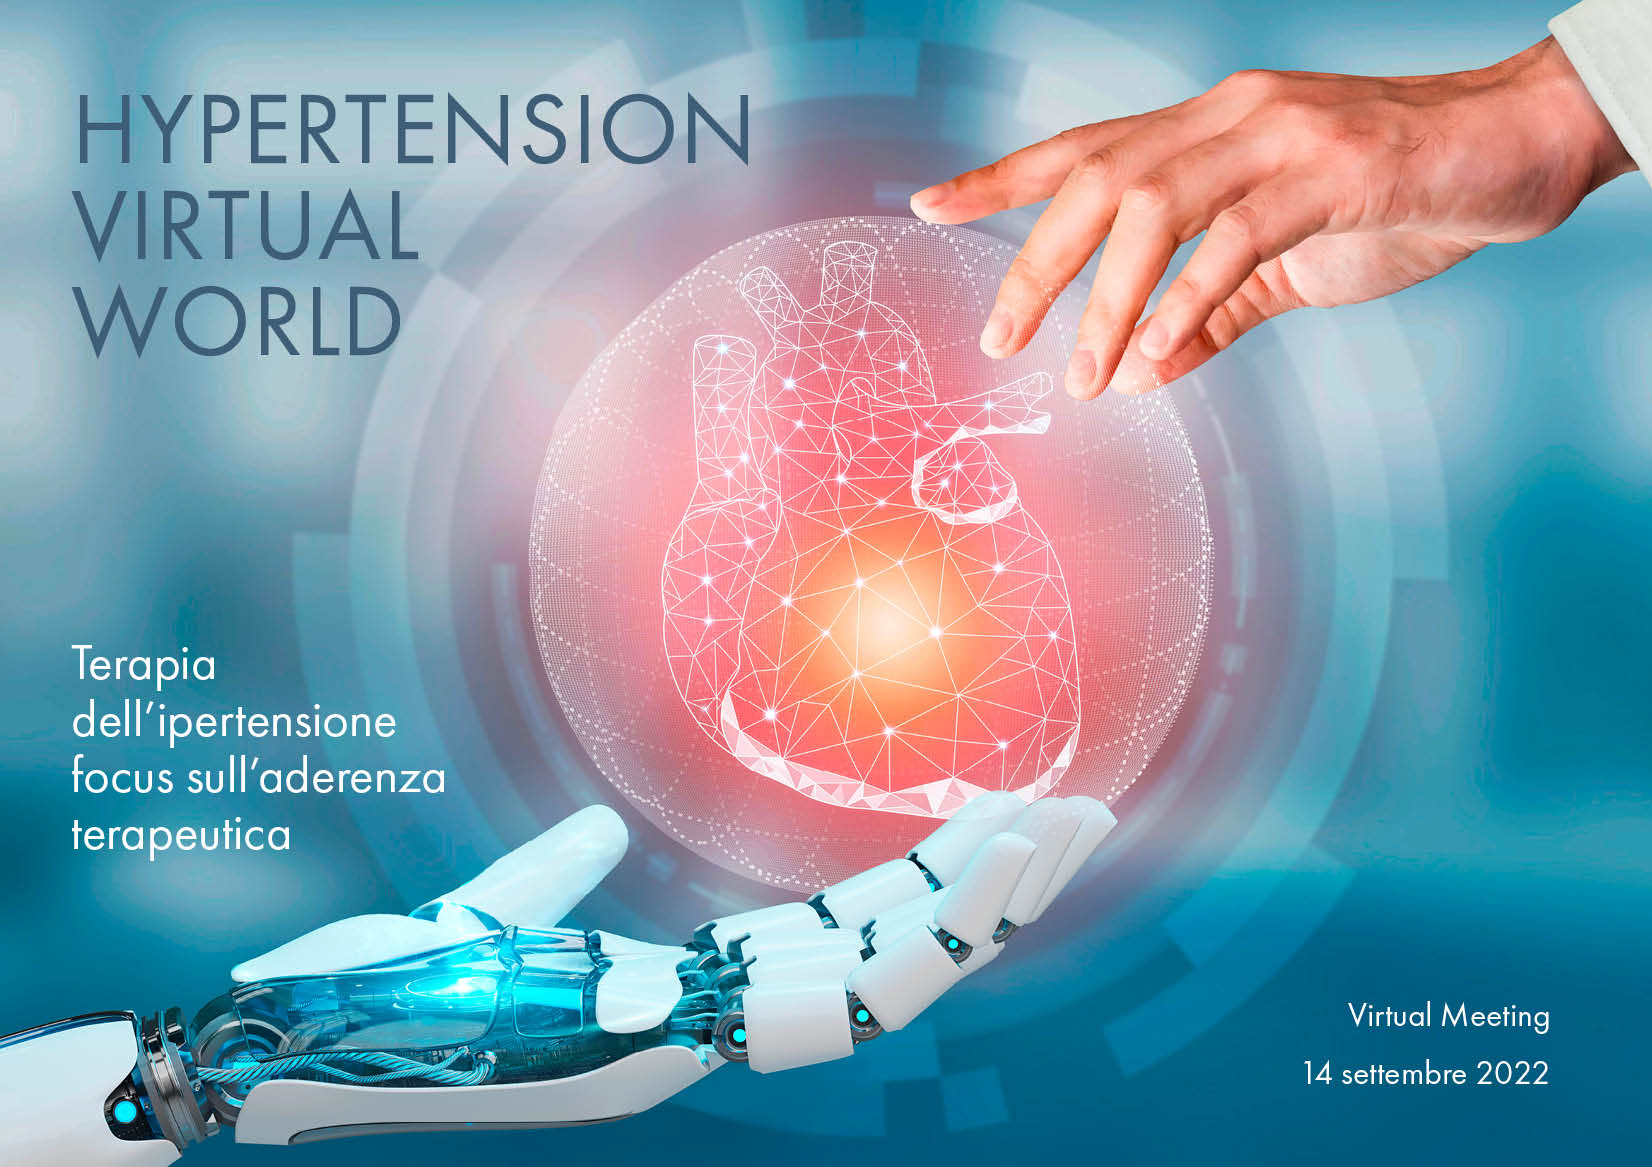 HYPERTENSION VIRTUAL WORLD 2022 - Terapia dell’ipertensione focus sull’aderenza terapeutica